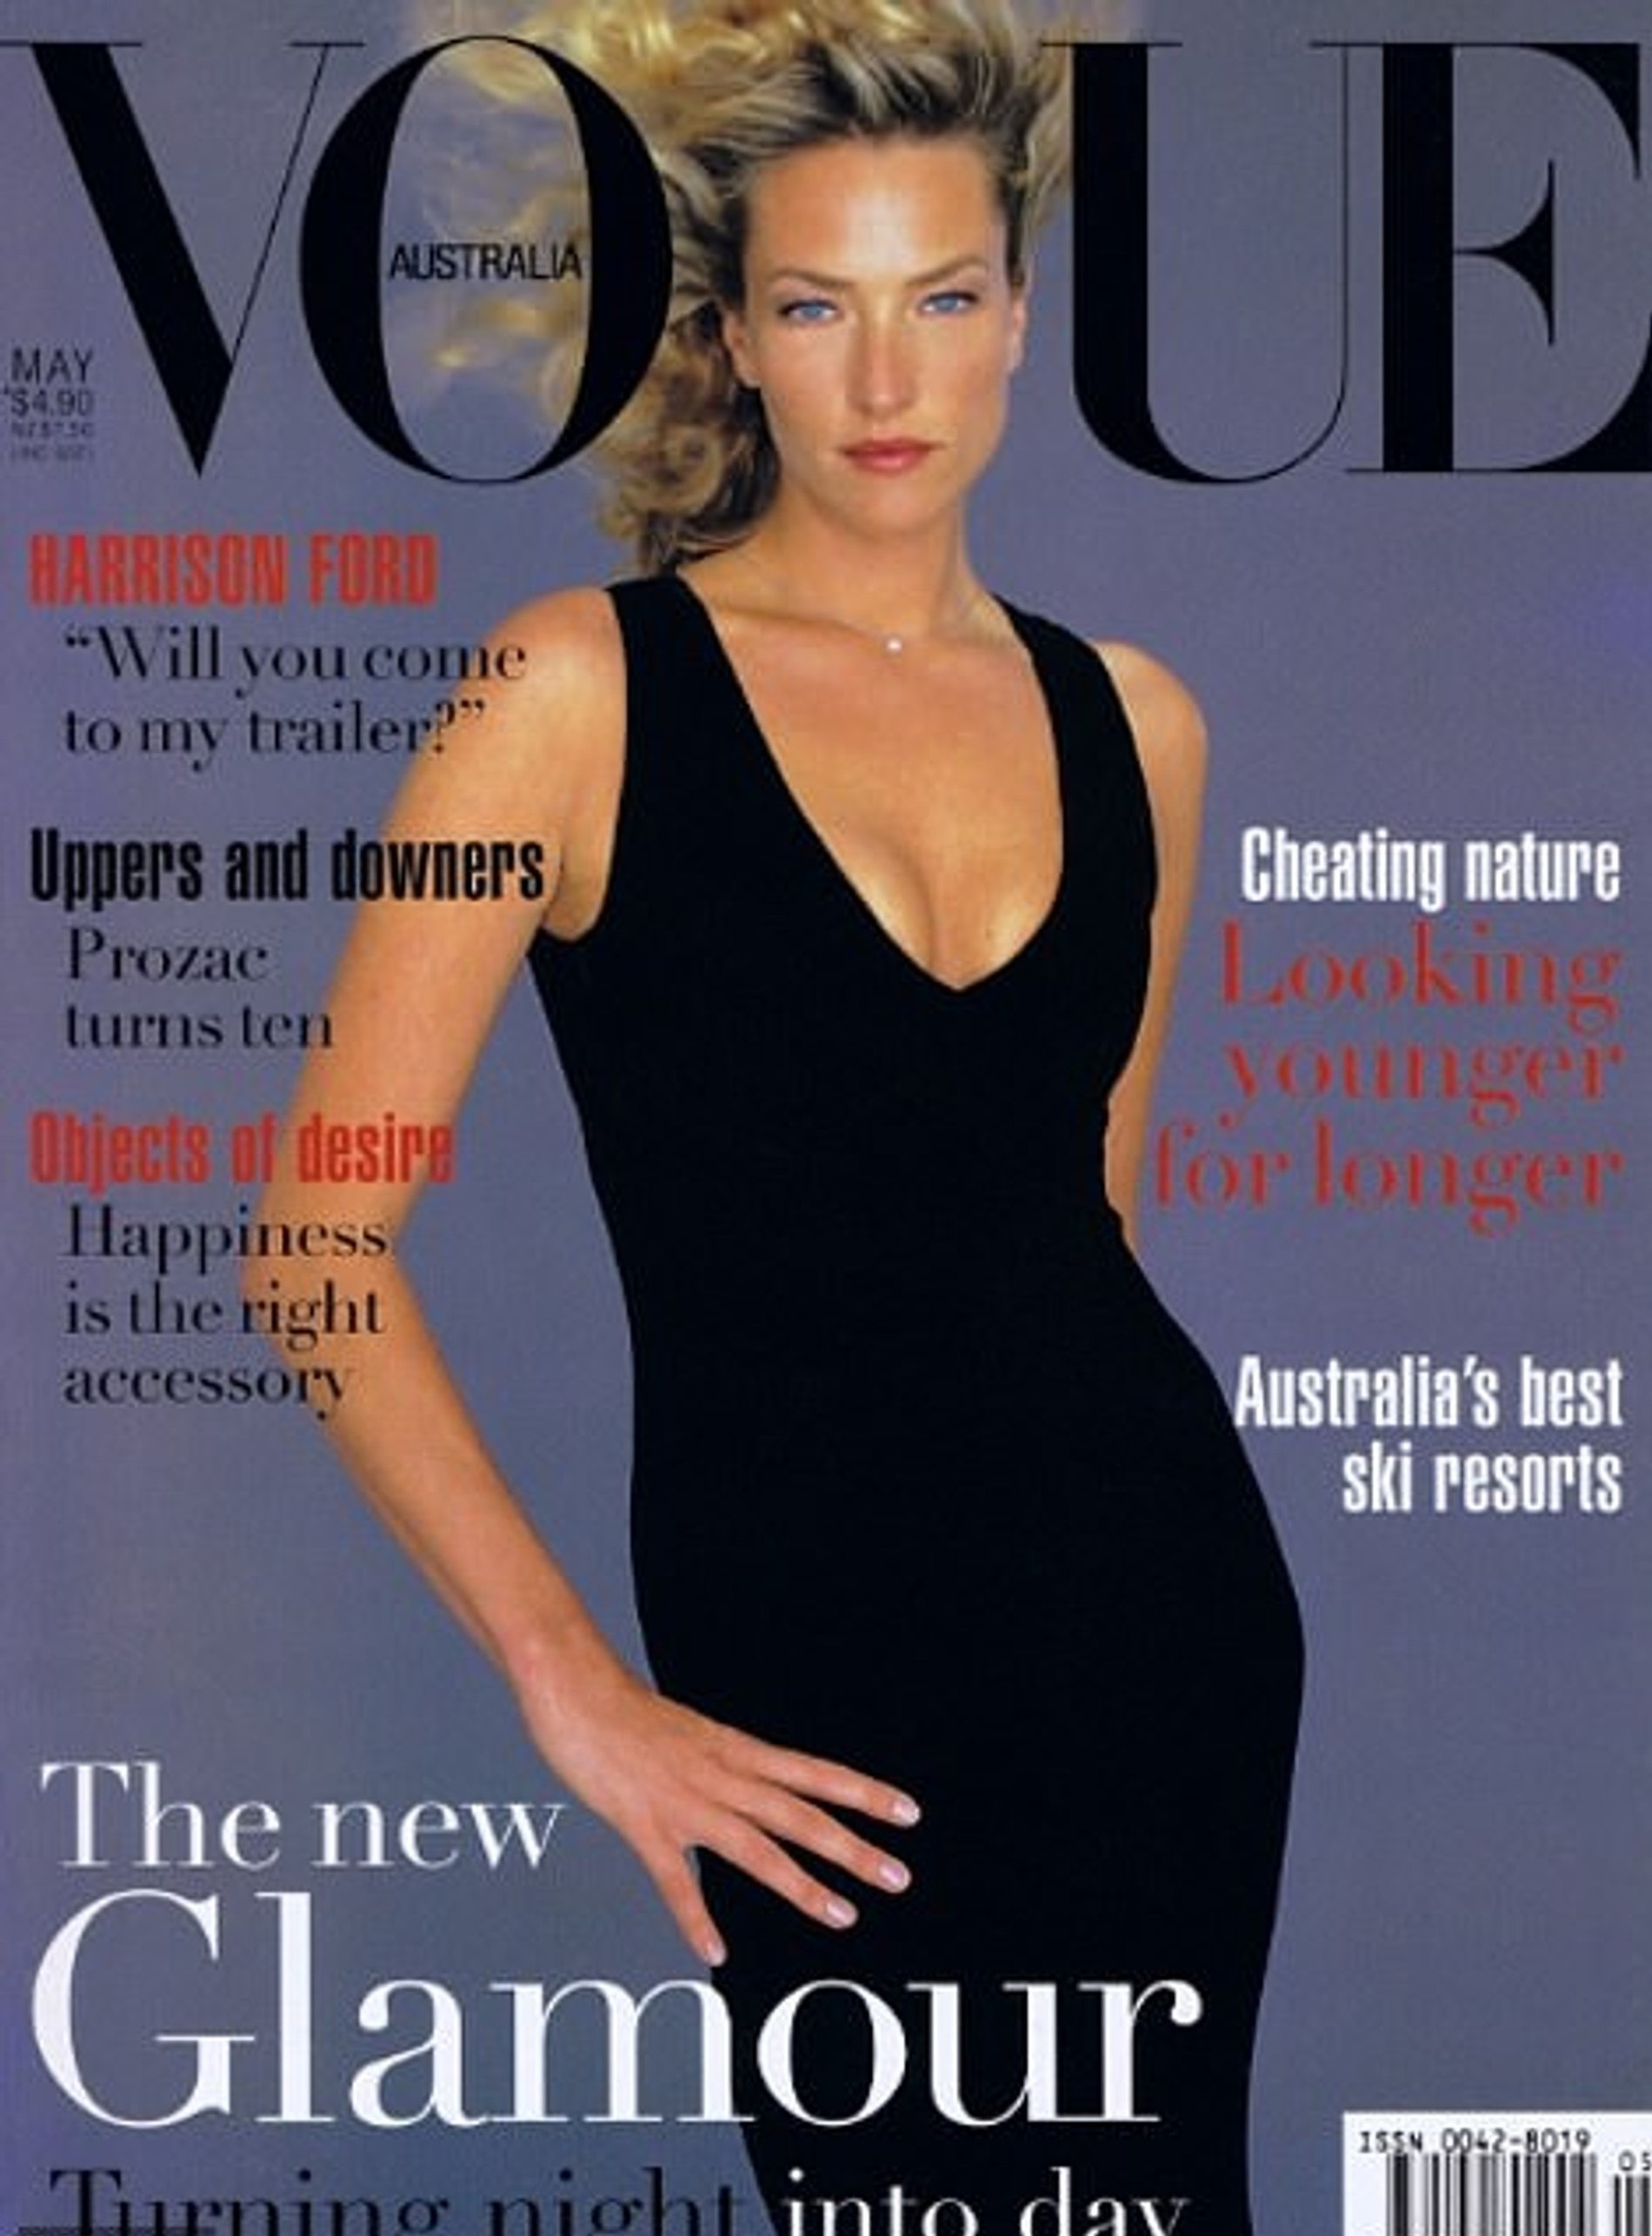 Татьяна Патитц на обложке австралийского Vogue
Фото: Vogue